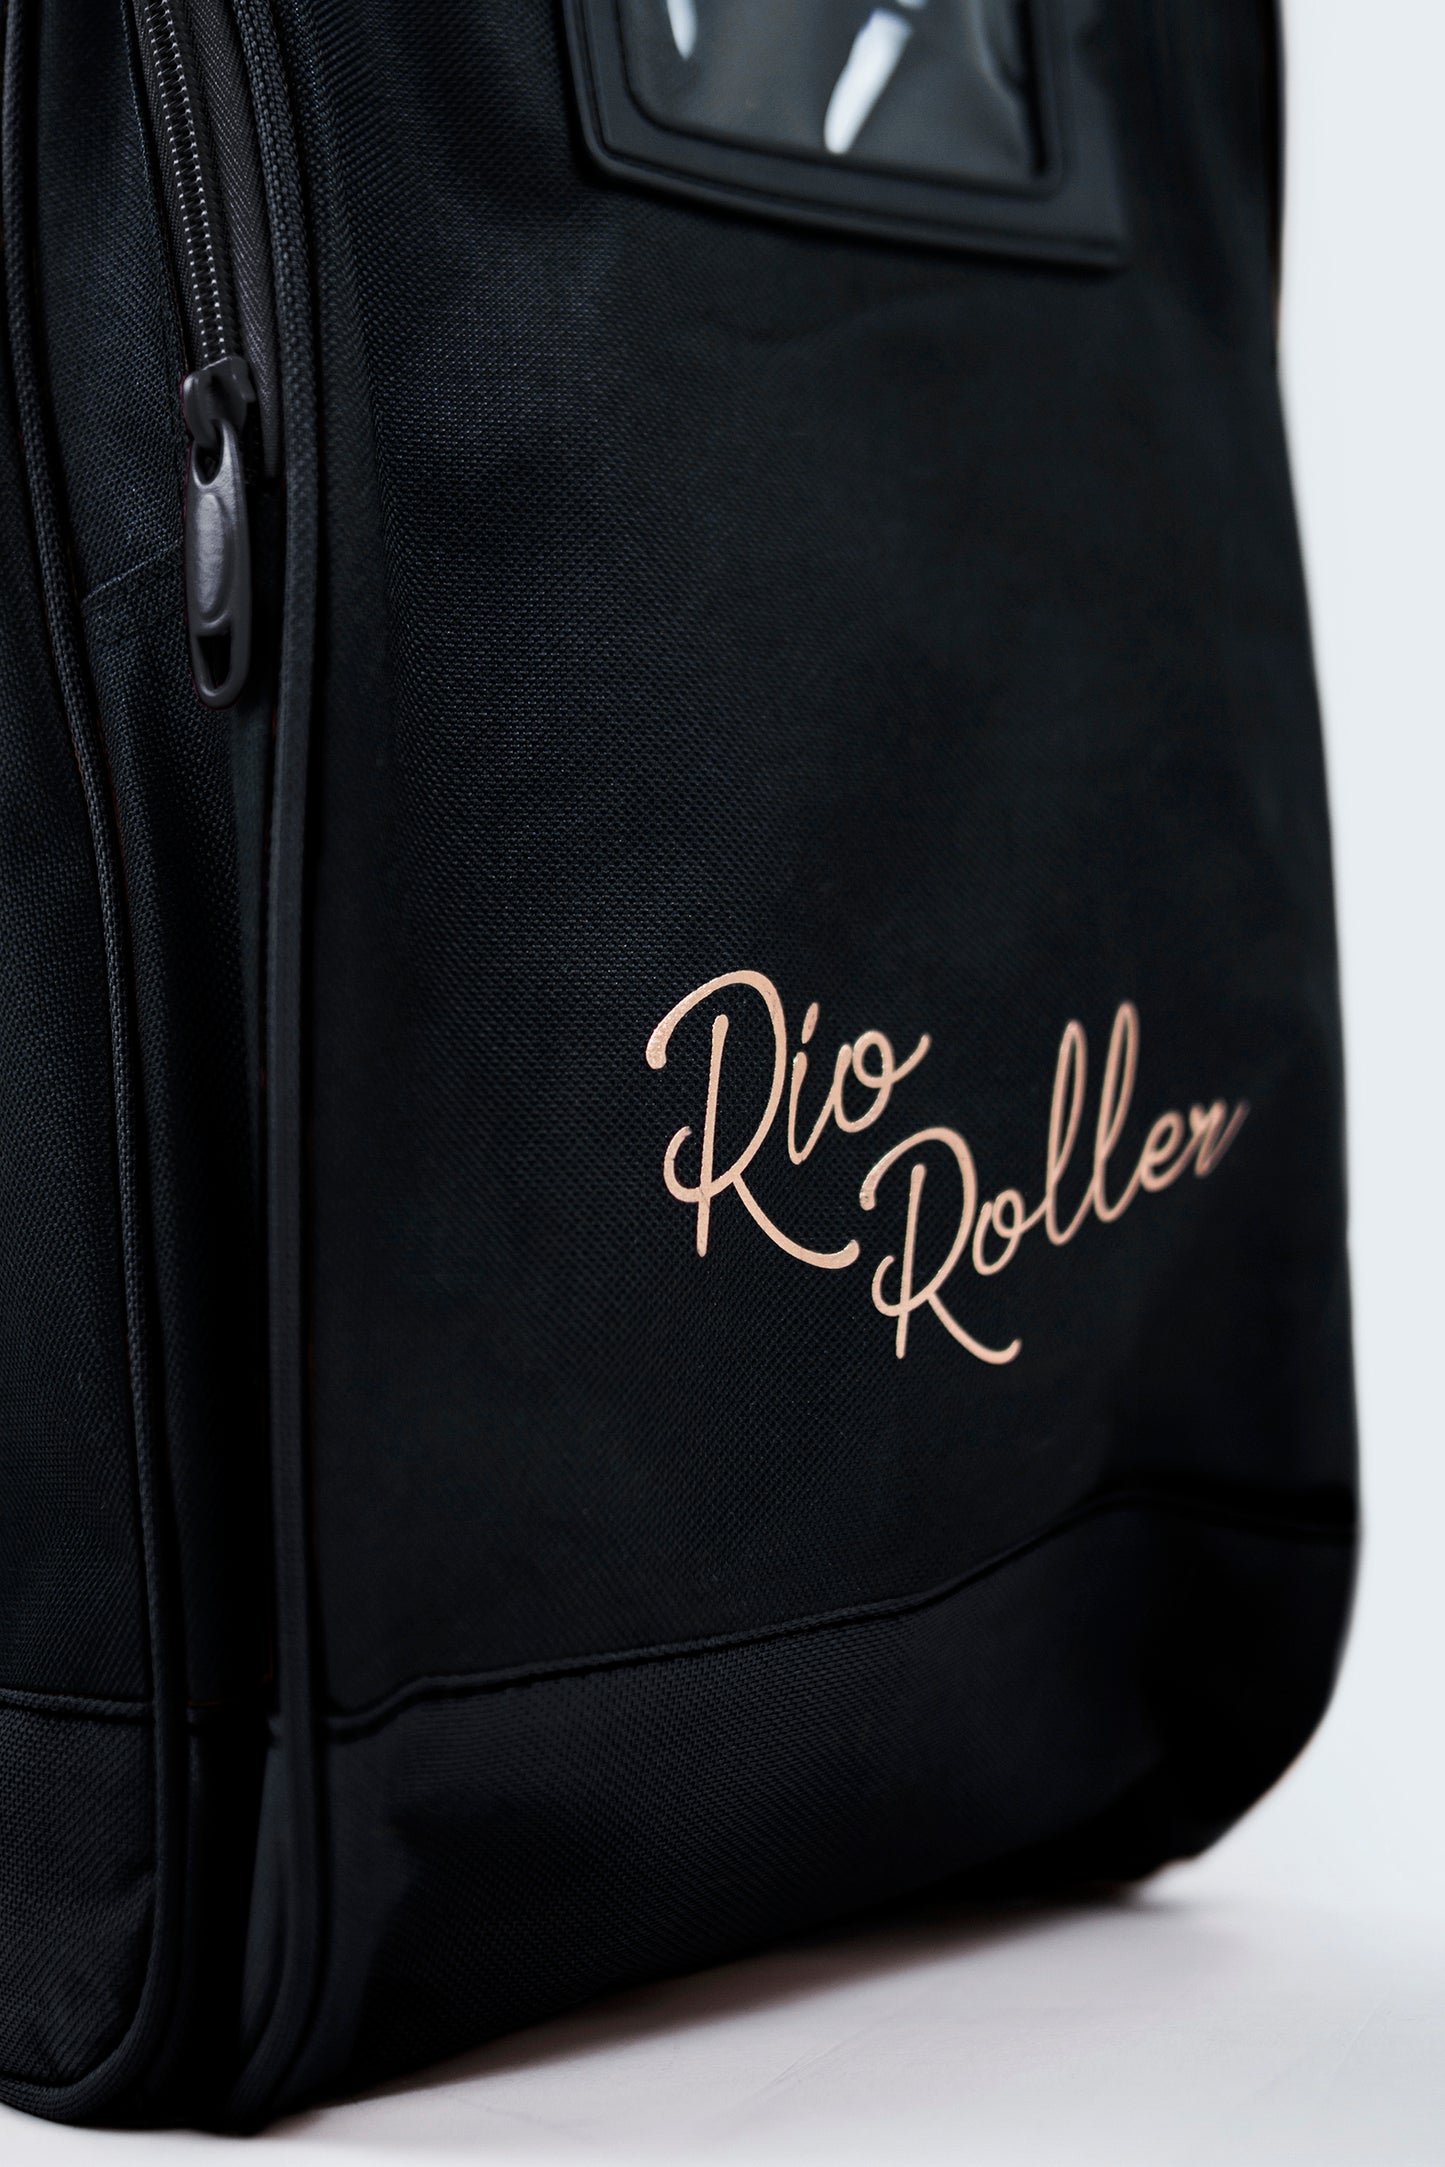 Rio Roller Rose Quad Skate Bag - Momma Trucker Skates